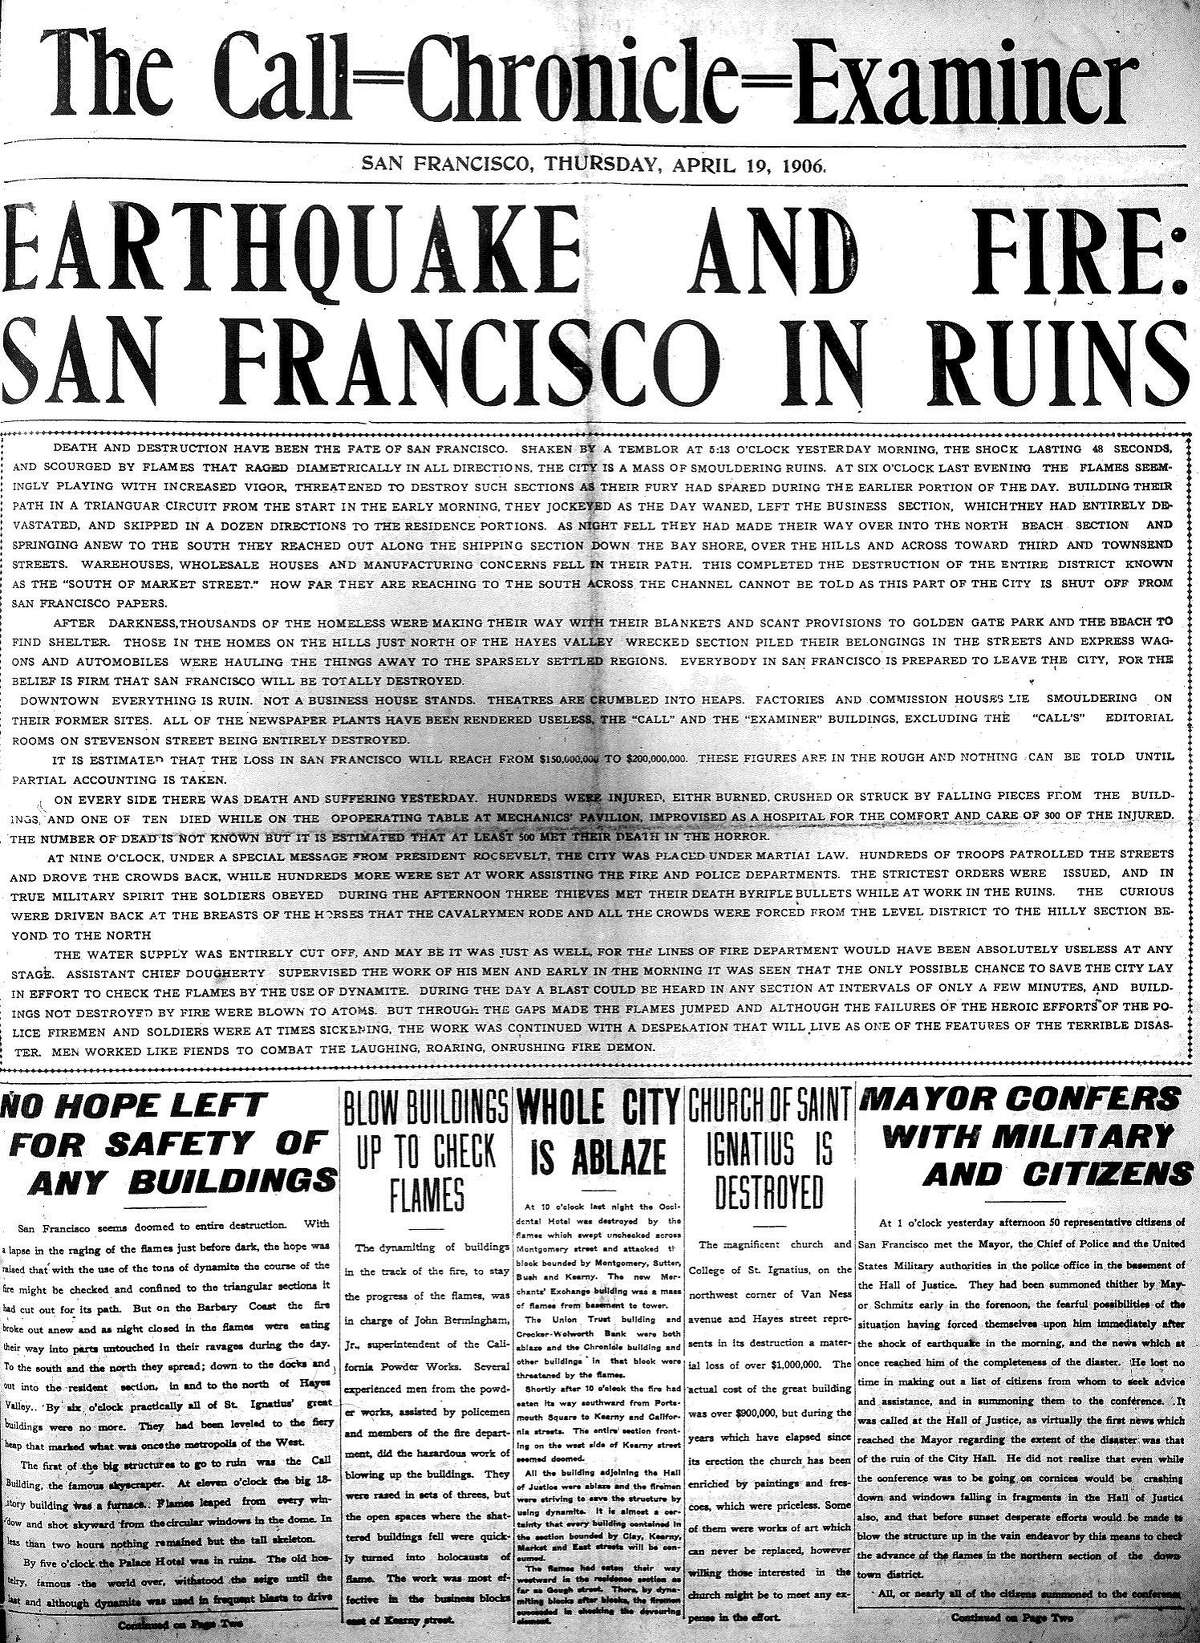 1906年4月19日，“死亡和毁灭是旧金山的命运。”在一场大地震摧毁旧金山湾区的第二天，《Call-Chronicle-Examiner》(一份罕见的城市报纸合作)上的头条这样写道。登录必赢亚洲多达3000人直接或间接死于地震，数万栋建筑被毁，20多万人无家可归。